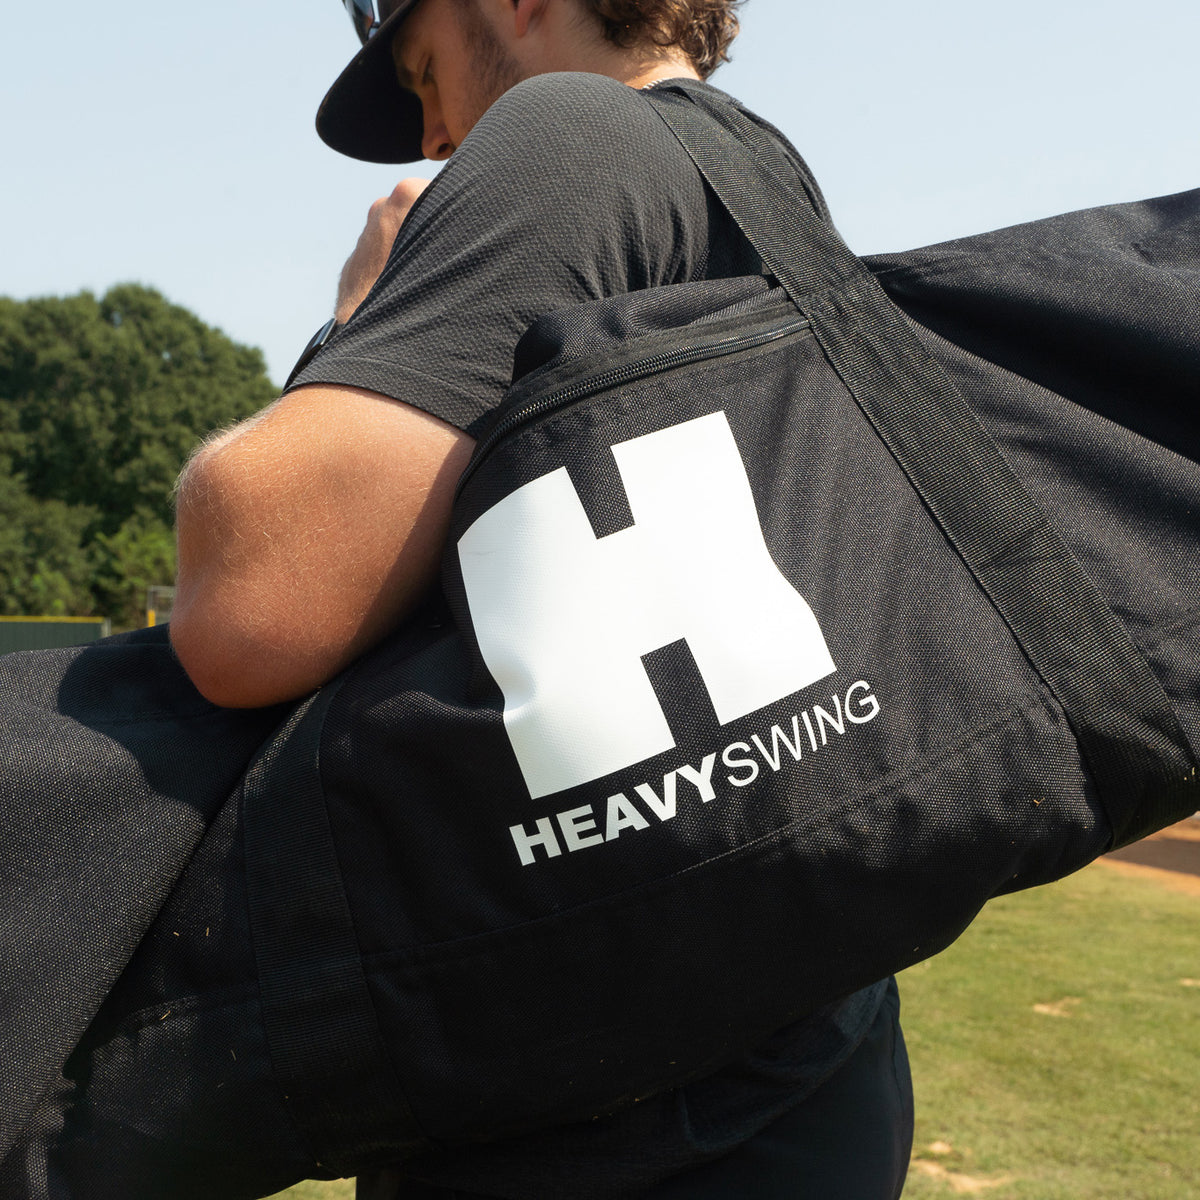 MaxBP HeavySwing Bat Duffle Bag - SPECIAL